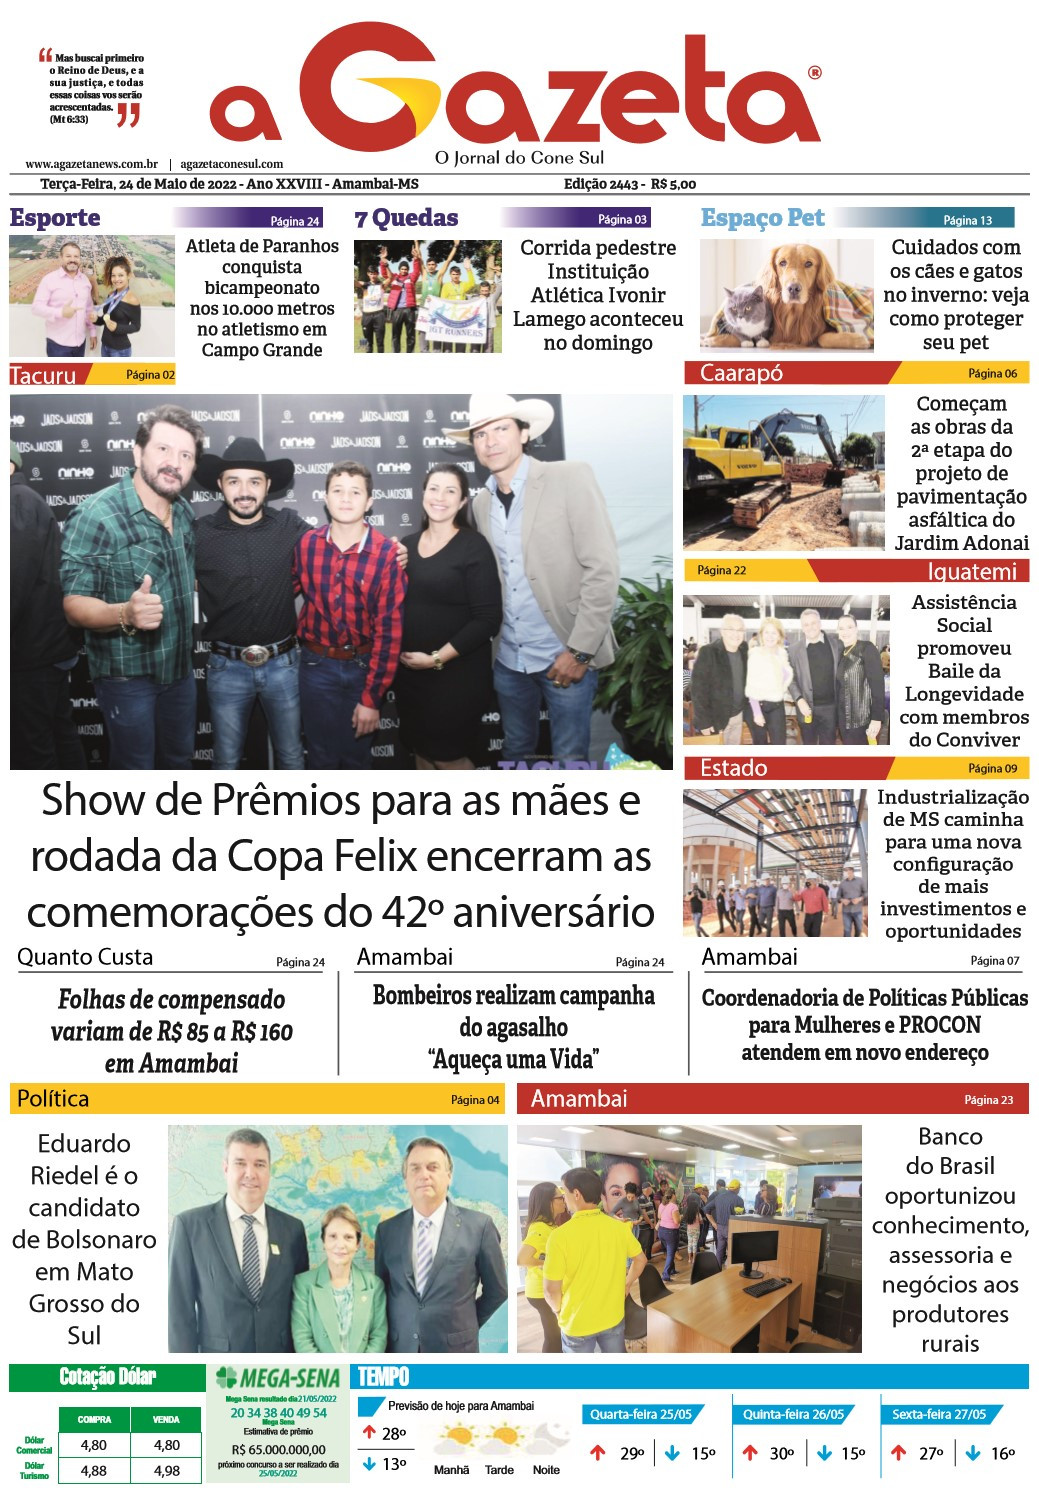 Confira a versão digital do jornal impresso A Gazeta desta terça-feira, dia 24